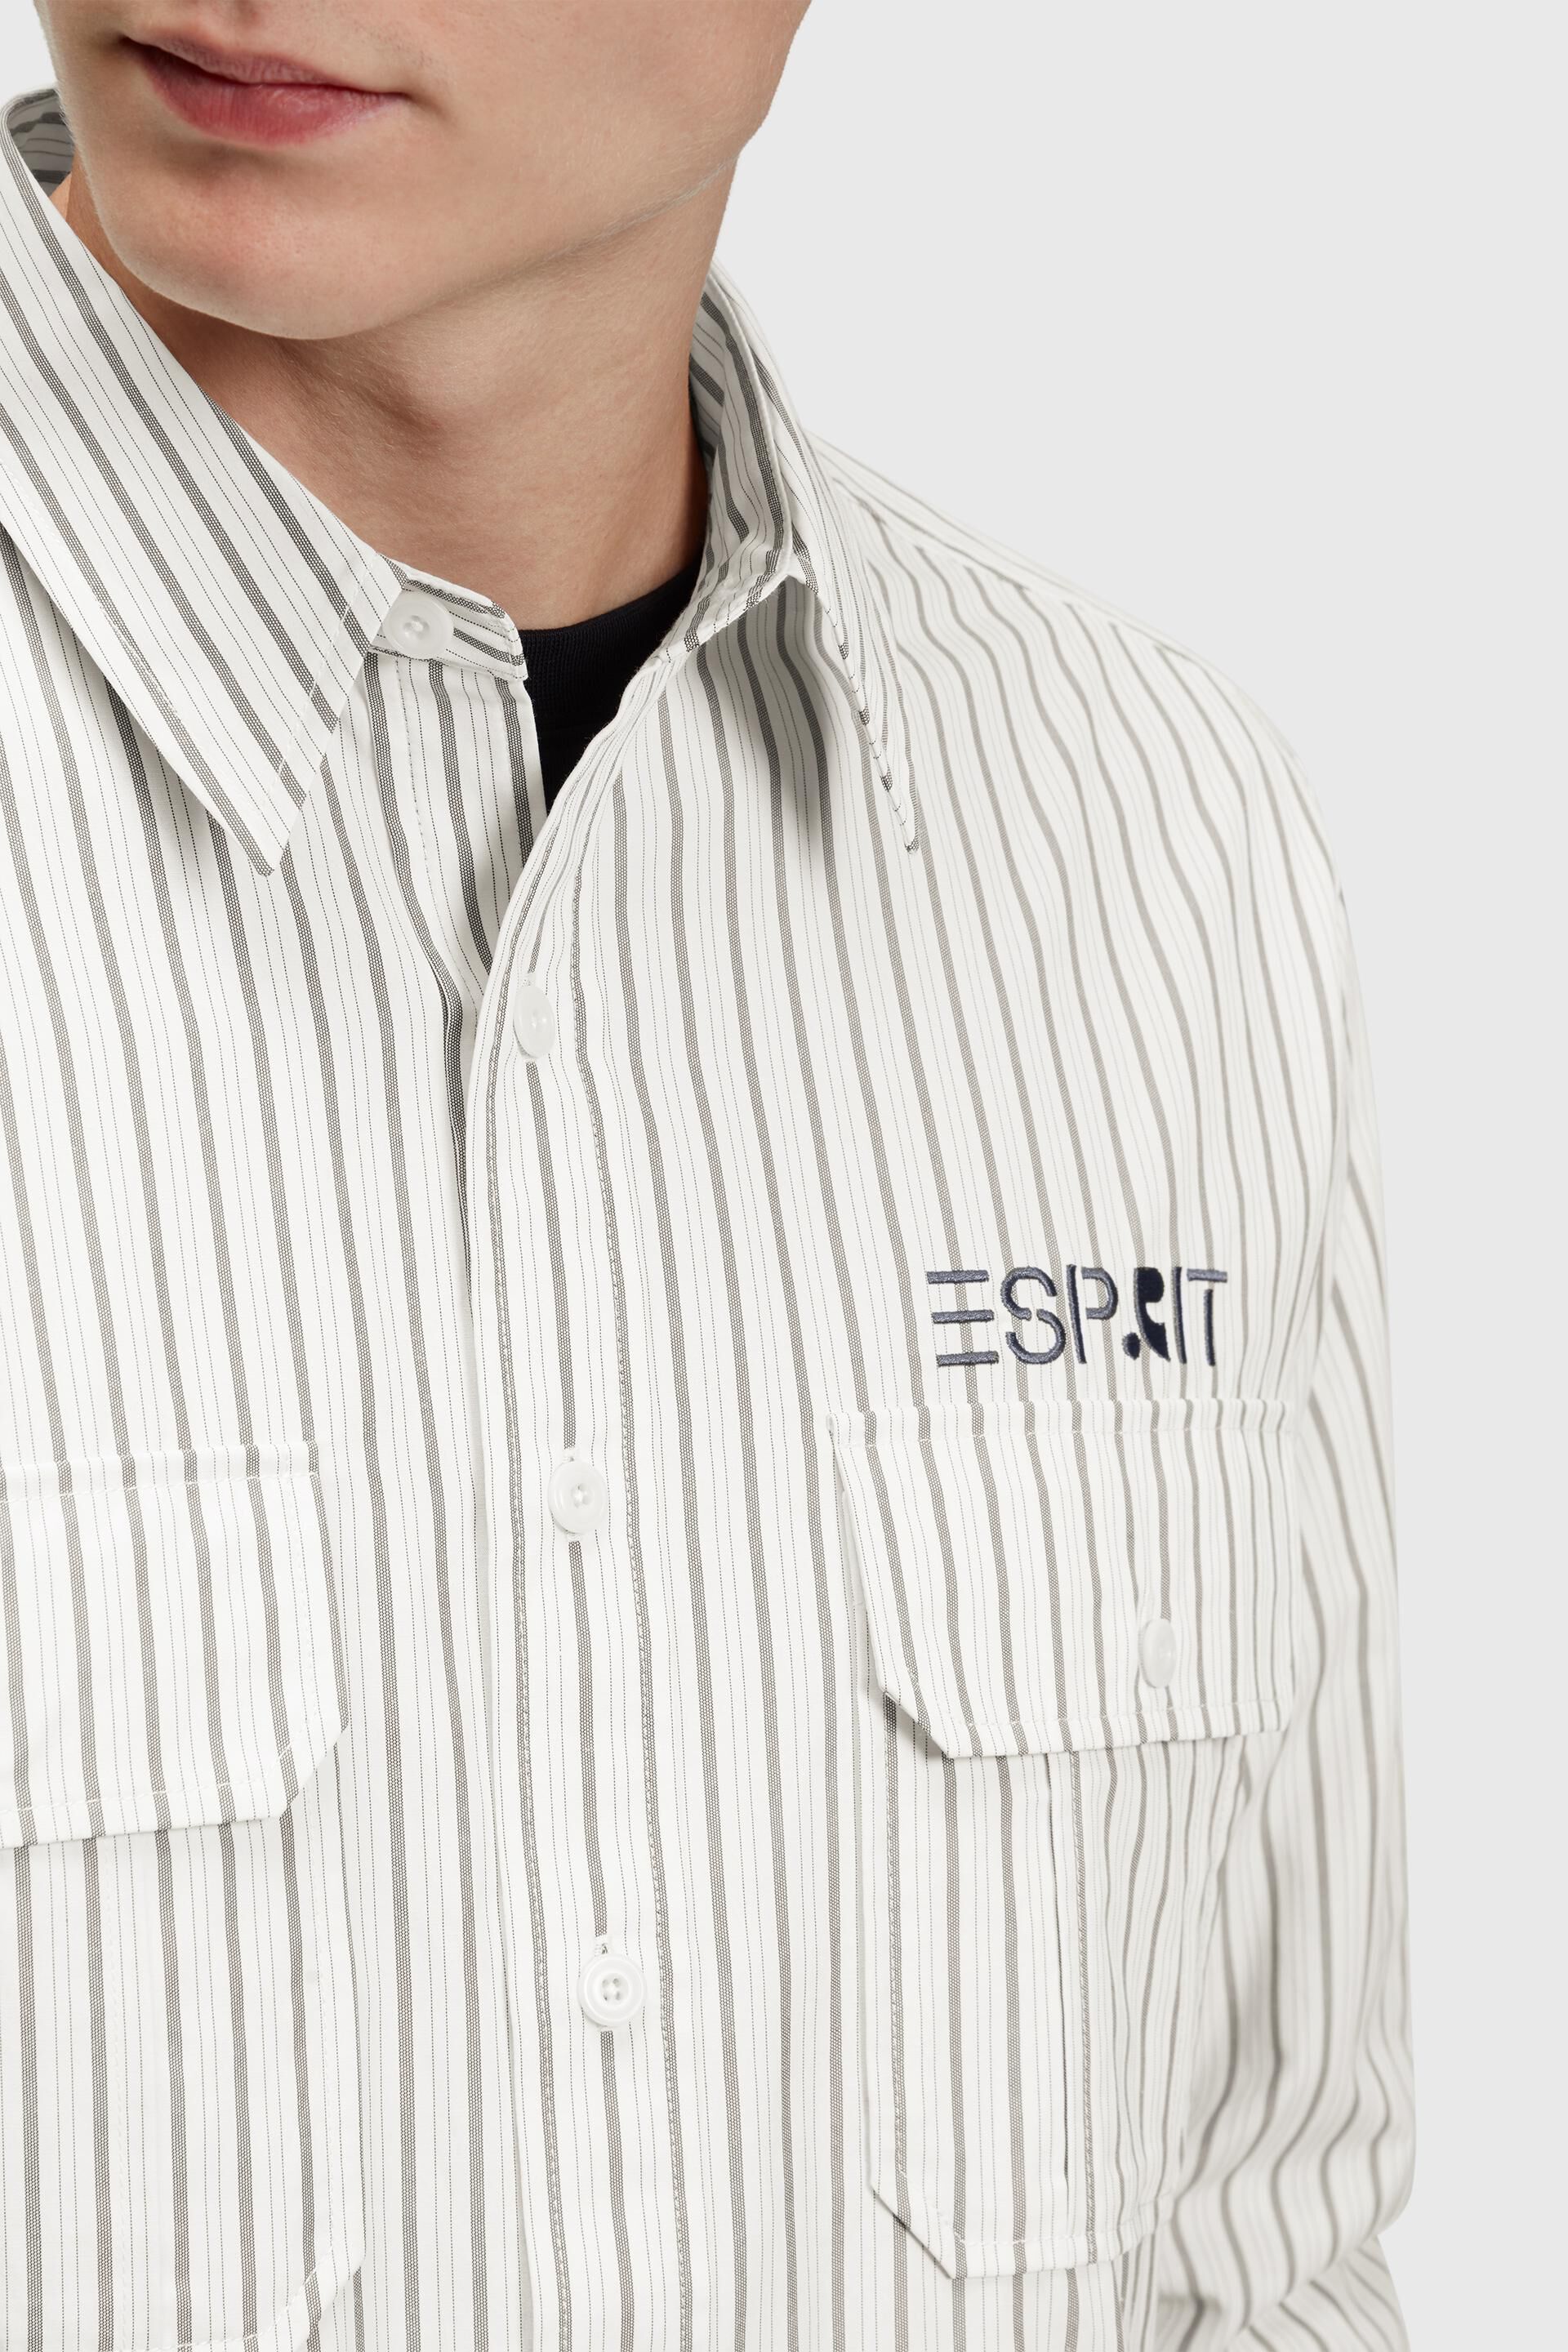 Esprit entspannter Gestreiftes mit Passform Hemd